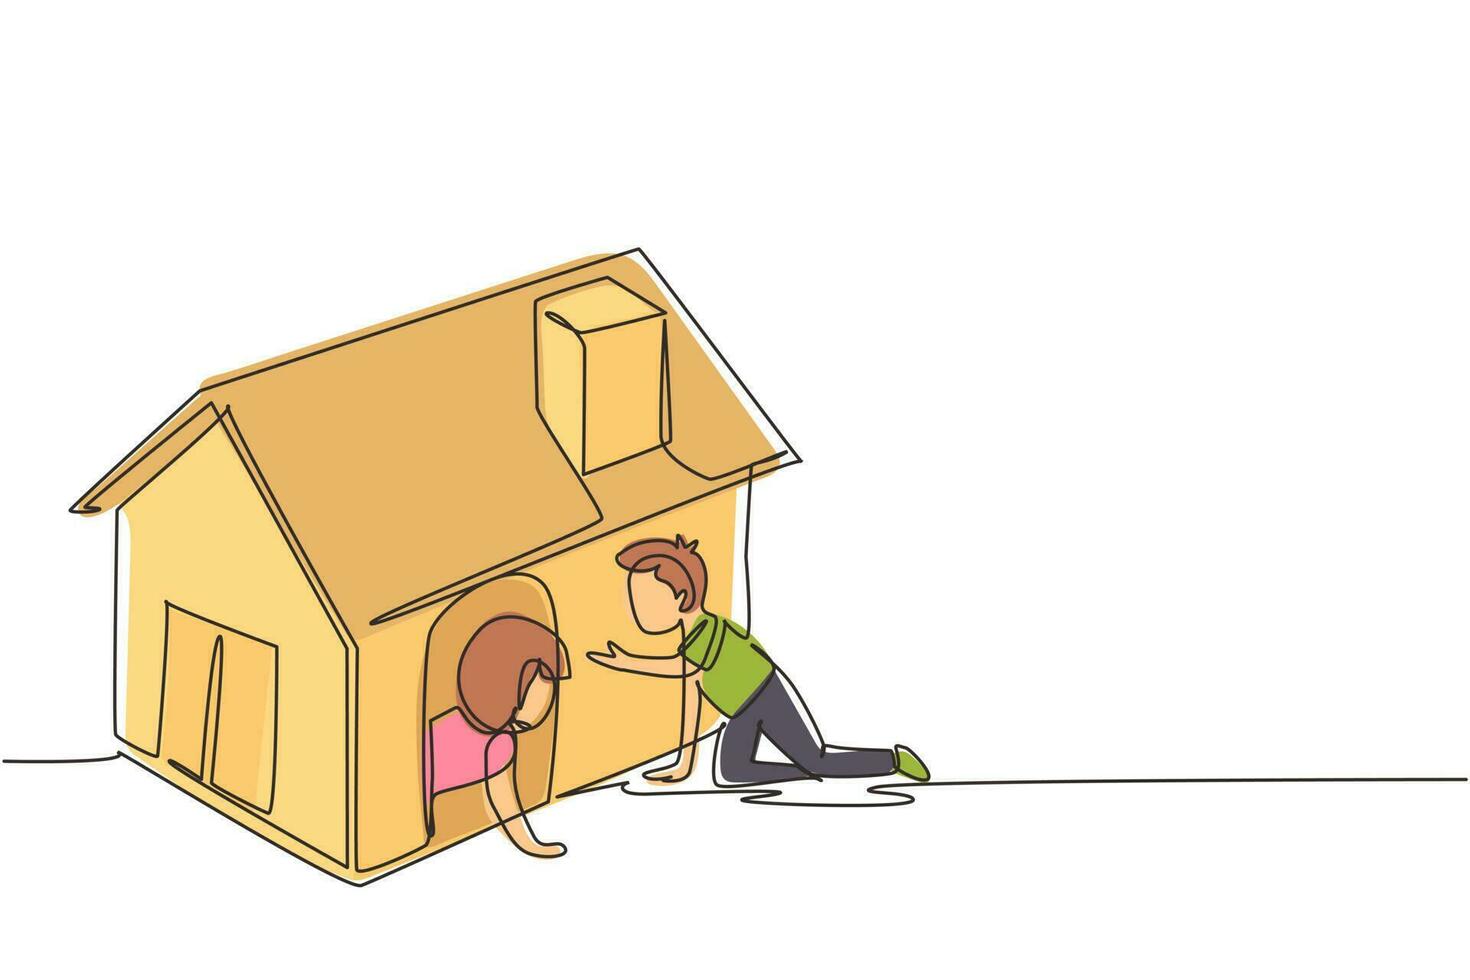 kontinuerlig en rad teckning barn leker kartong leksak hus tillsammans. pojke och flicka som leker in och ut ur leksakshemmet. barn som sitter i lekstuga. enda rad rita design vektorgrafisk illustration vektor